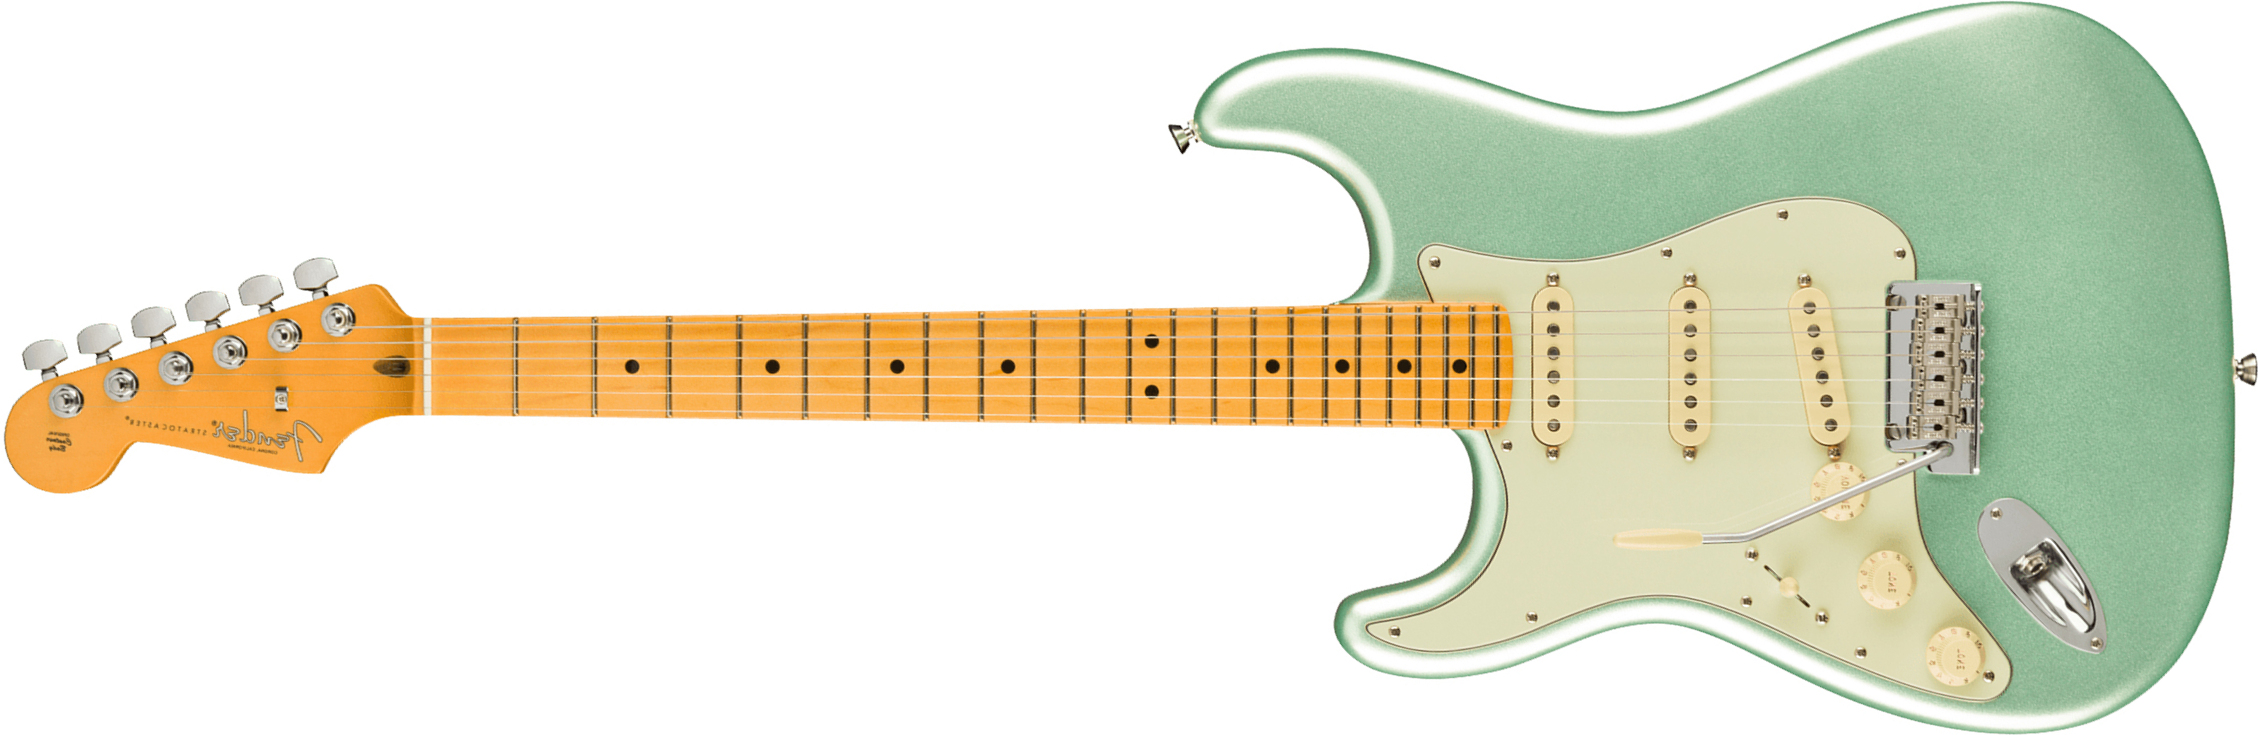 Fender Strat American Professional Ii Lh Gaucher Usa Mn - Mystic Surf Green - E-Gitarre für Linkshänder - Main picture